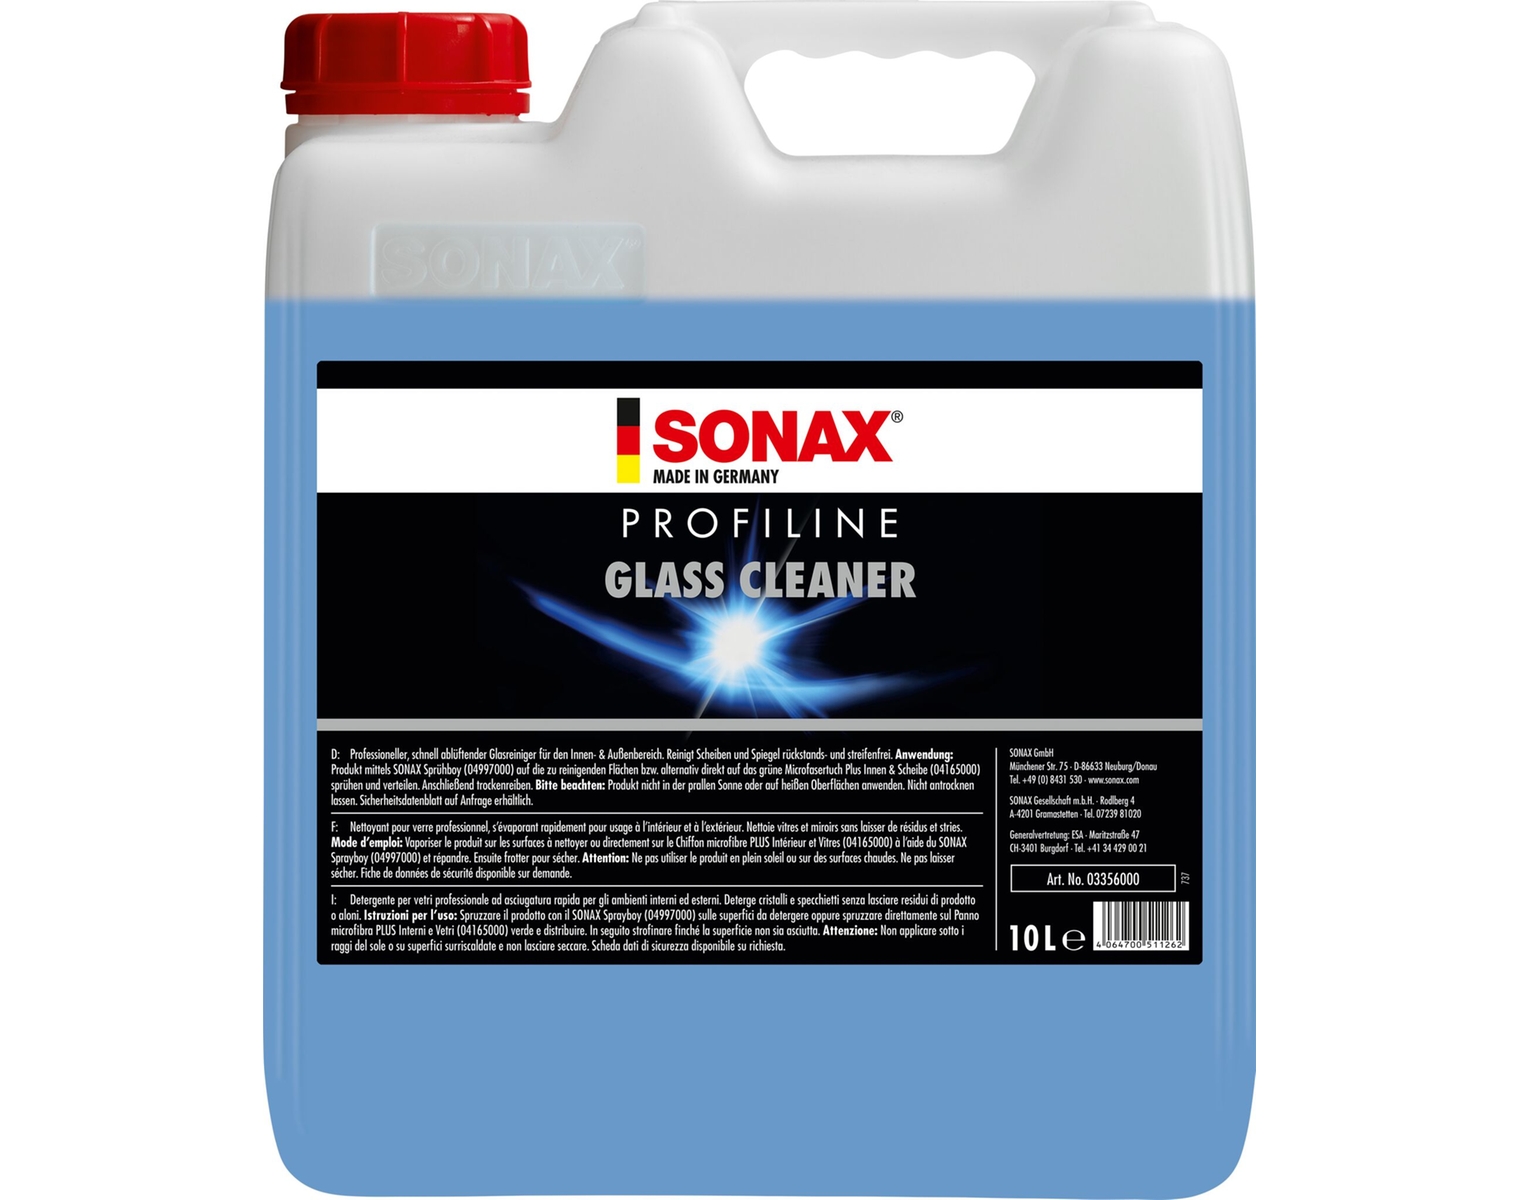 SONAX PROFILINE GlassCleaner ScheibenKlar, 335600, 10 Liter